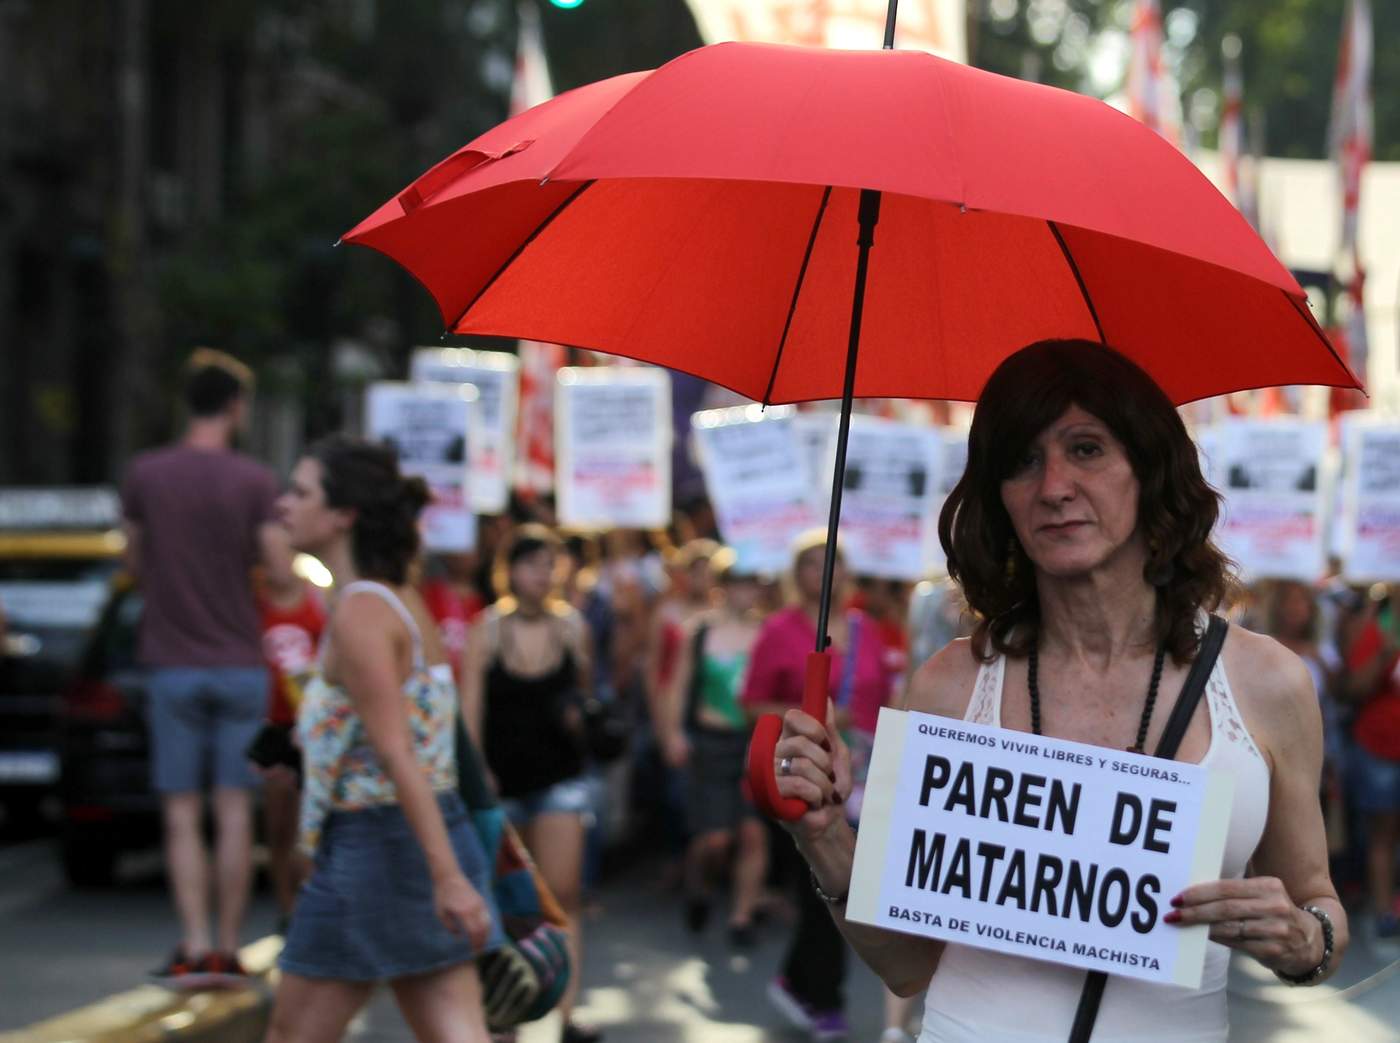 Argentina contabilizó entre 2013 y 2018 un total de 576,360 casos de violencia contra la mujer, en la mayoría de los cuales había vínculo previo entre el agresor y las víctimas, según datos oficiales difundidos ayer. (ARCHIVO)